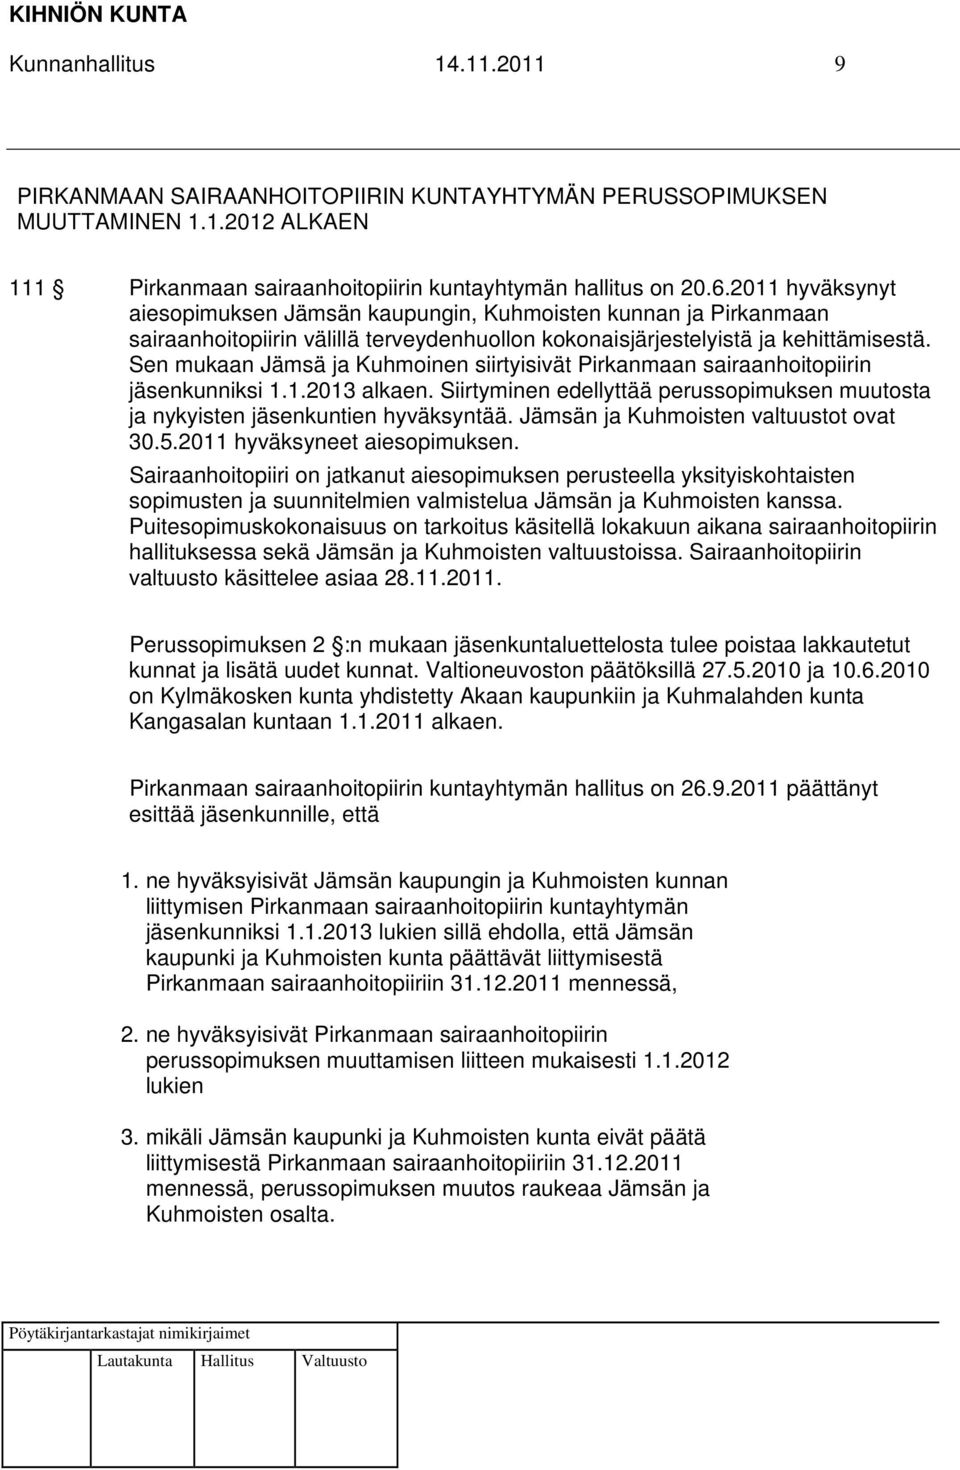 Sen mukaan Jämsä ja Kuhmoinen siirtyisivät Pirkanmaan sairaanhoitopiirin jäsenkunniksi 1.1.2013 alkaen. Siirtyminen edellyttää perussopimuksen muutosta ja nykyisten jäsenkuntien hyväksyntää.